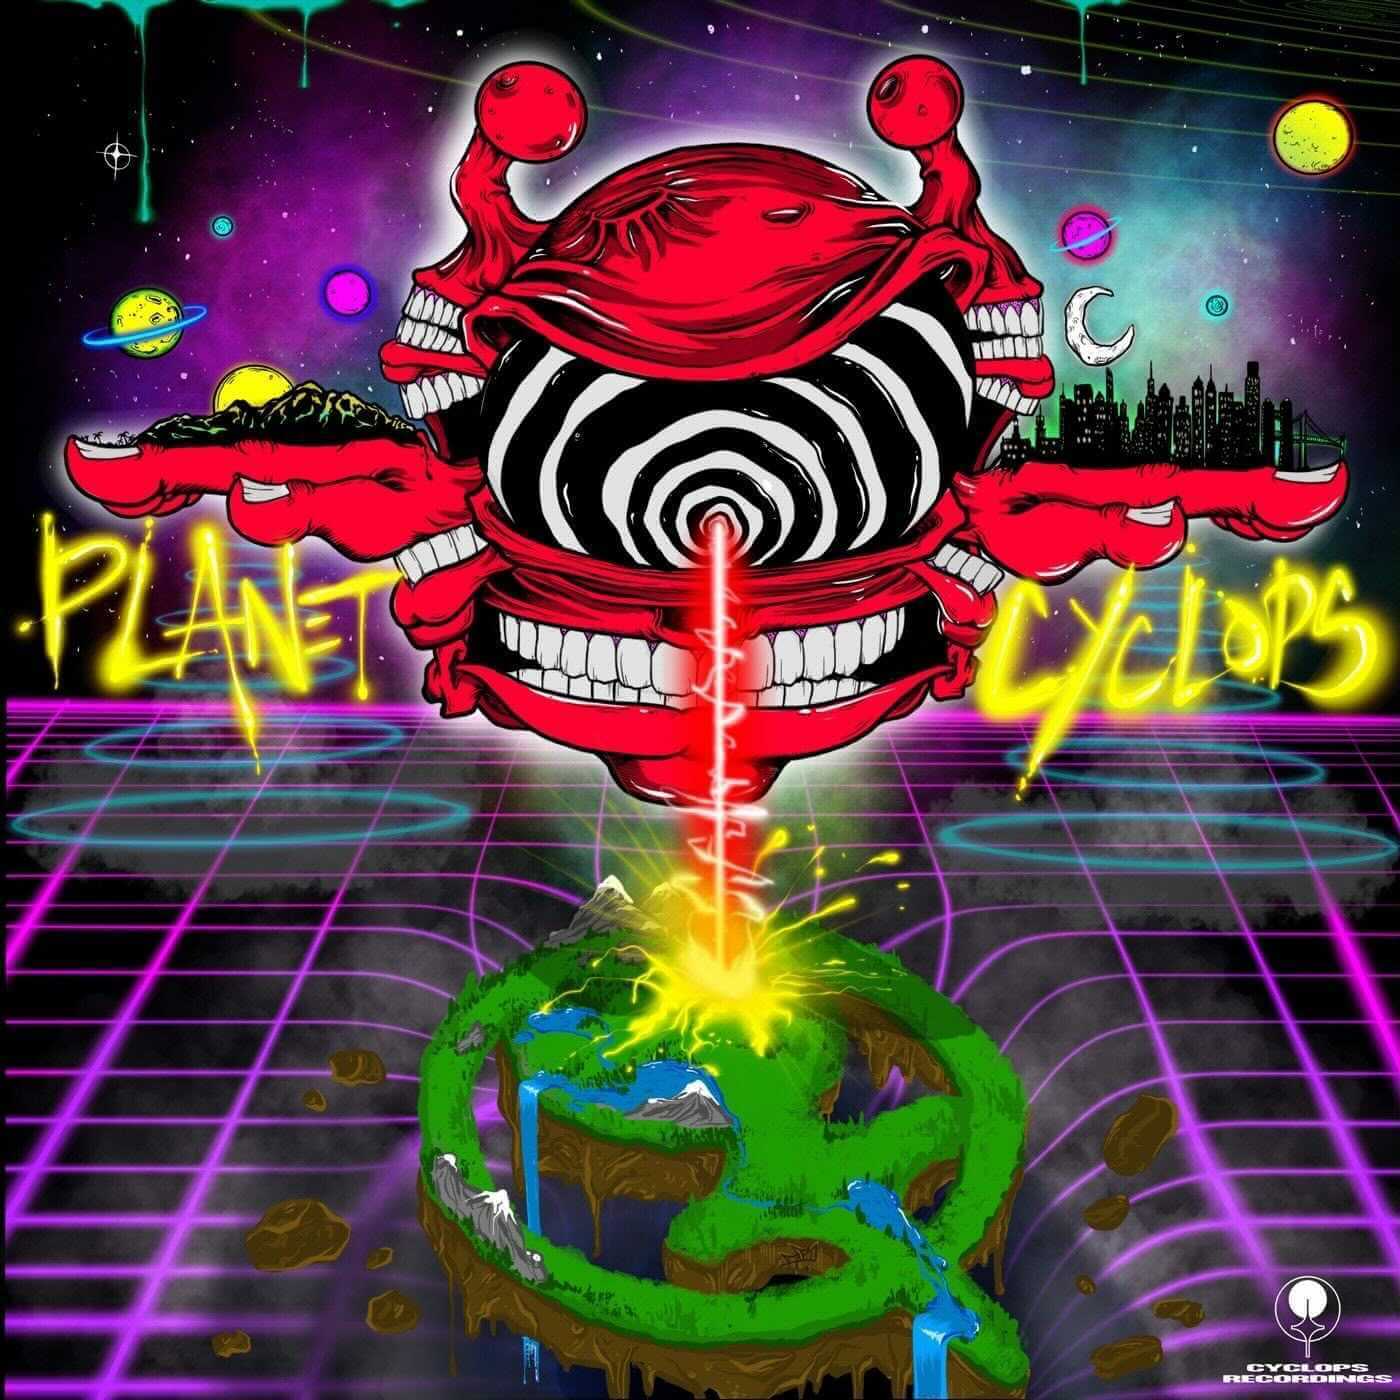 Cyclops Recordings Presents ‘Planet Cyclops’ Album